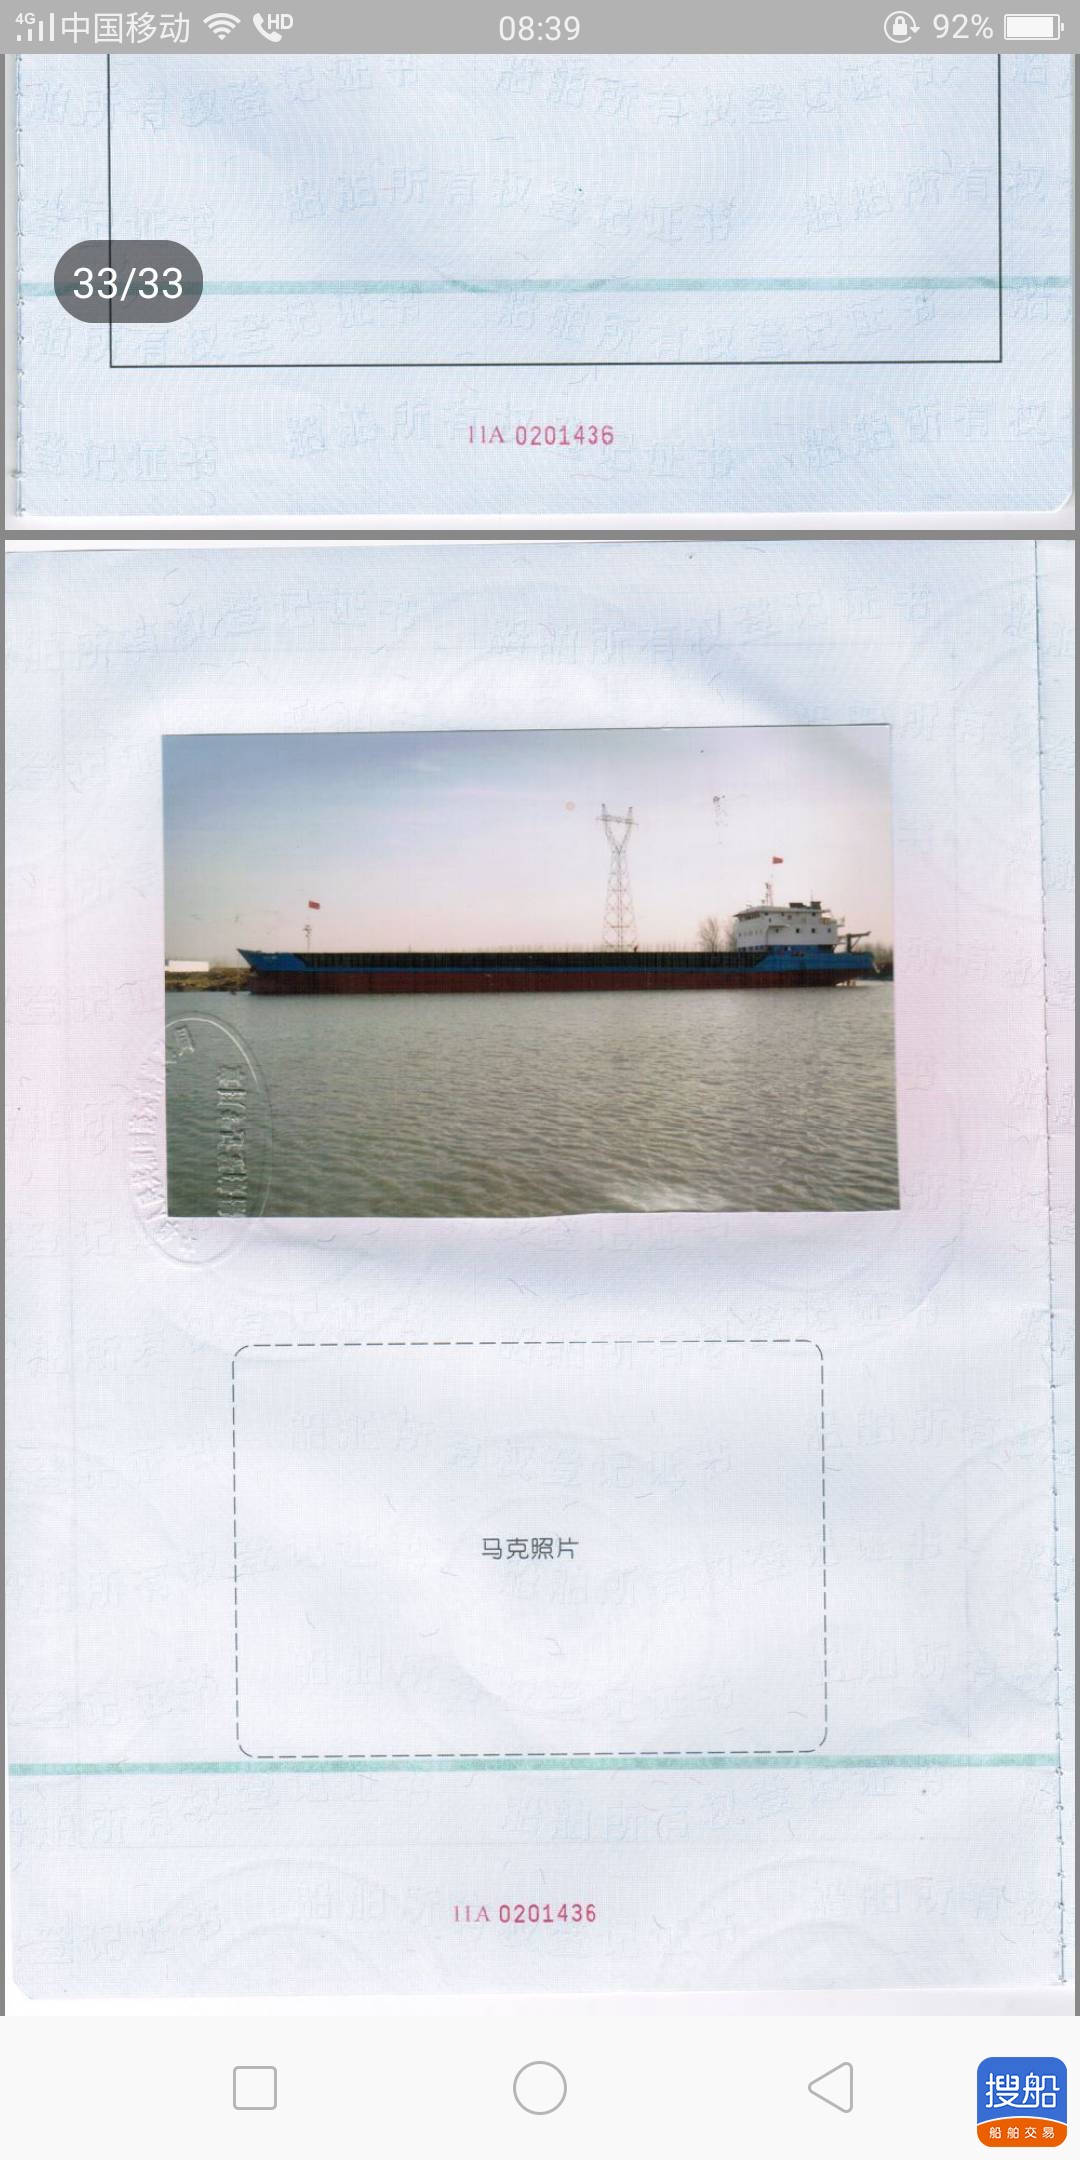 出售:5000吨甲板驳船